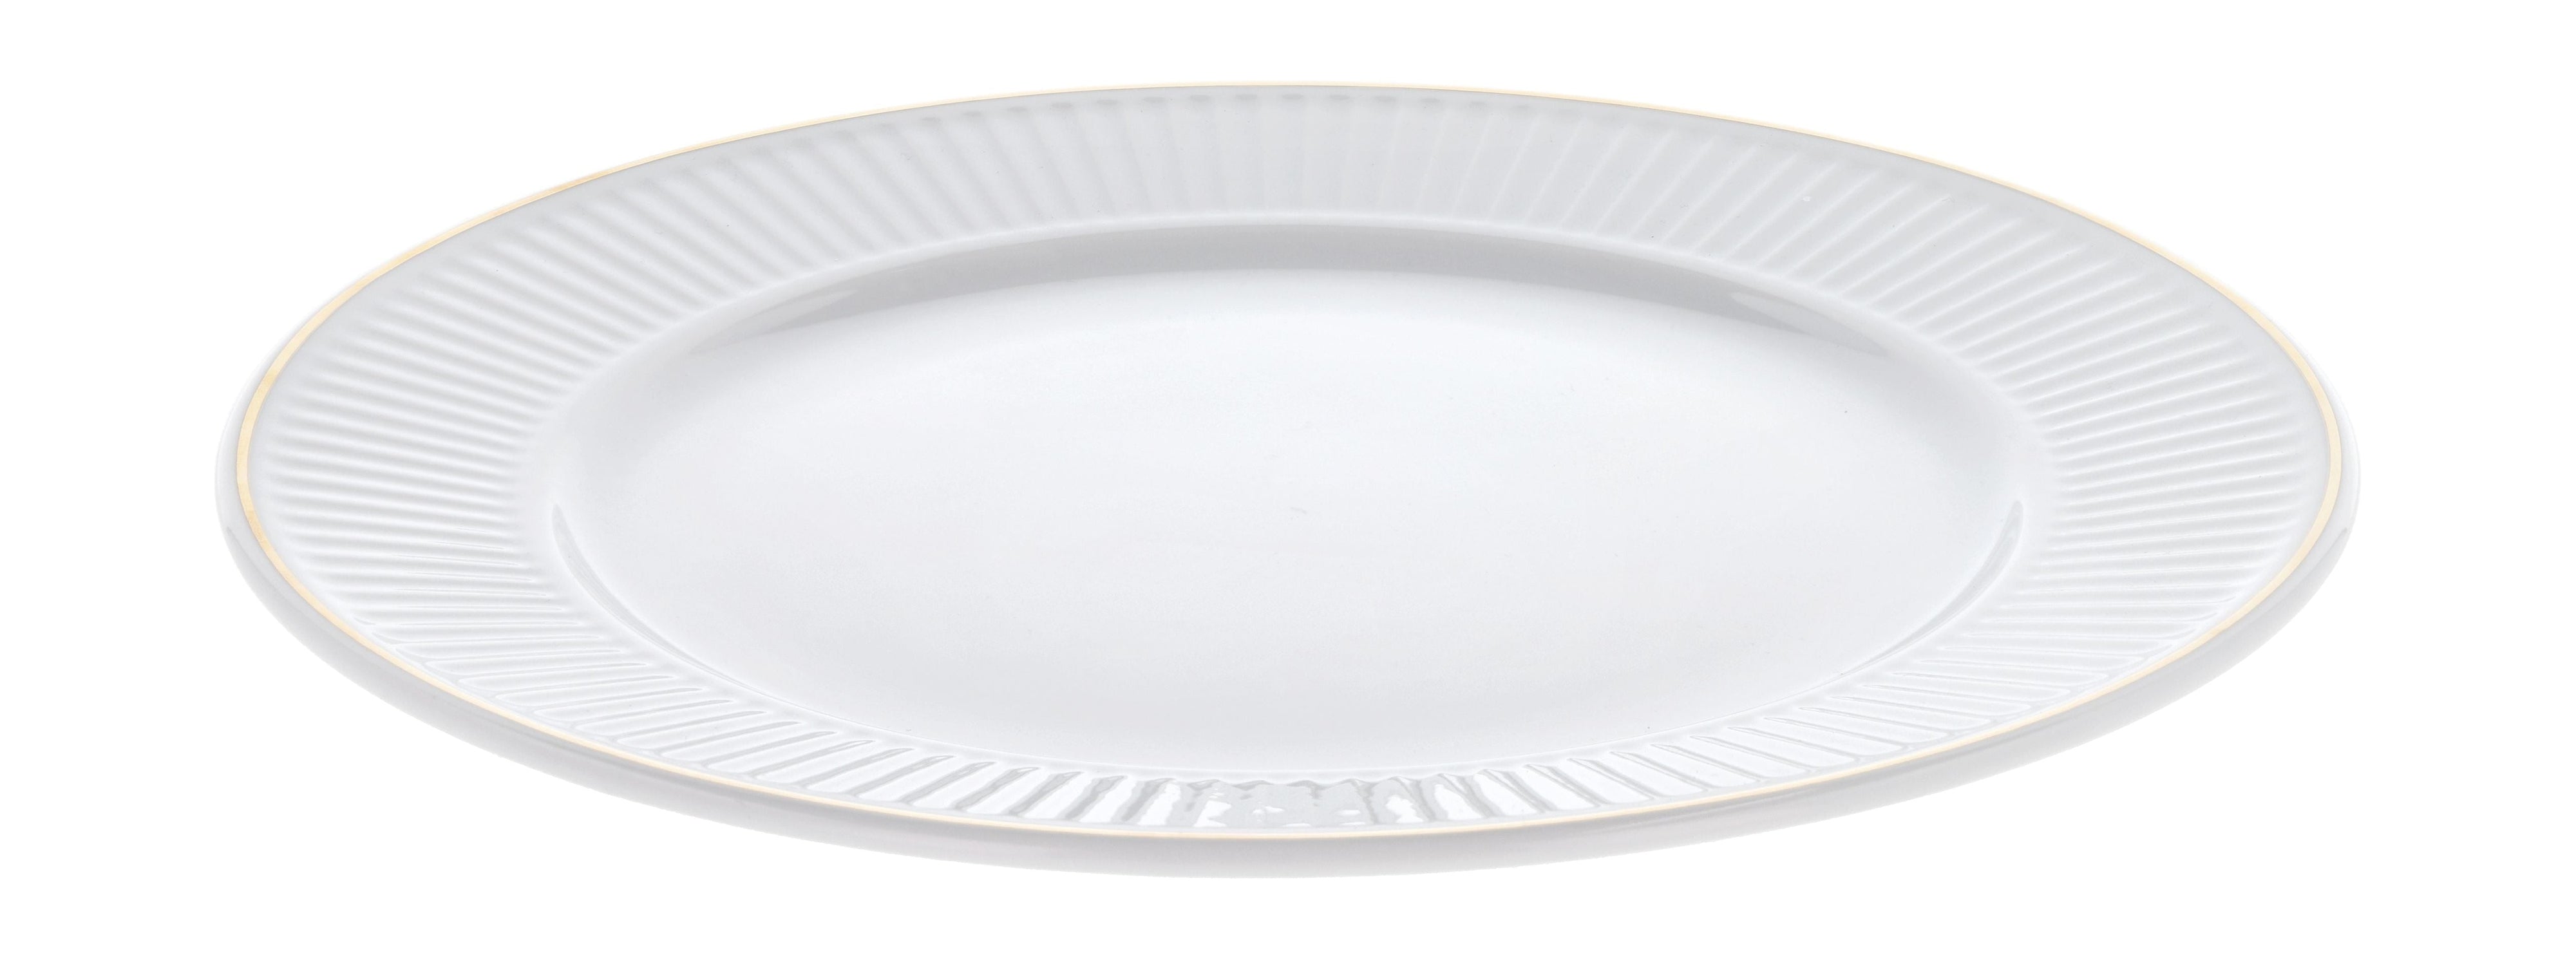 Pillivuyt Assie de la plissé blanc / matt or, Ø28 cm